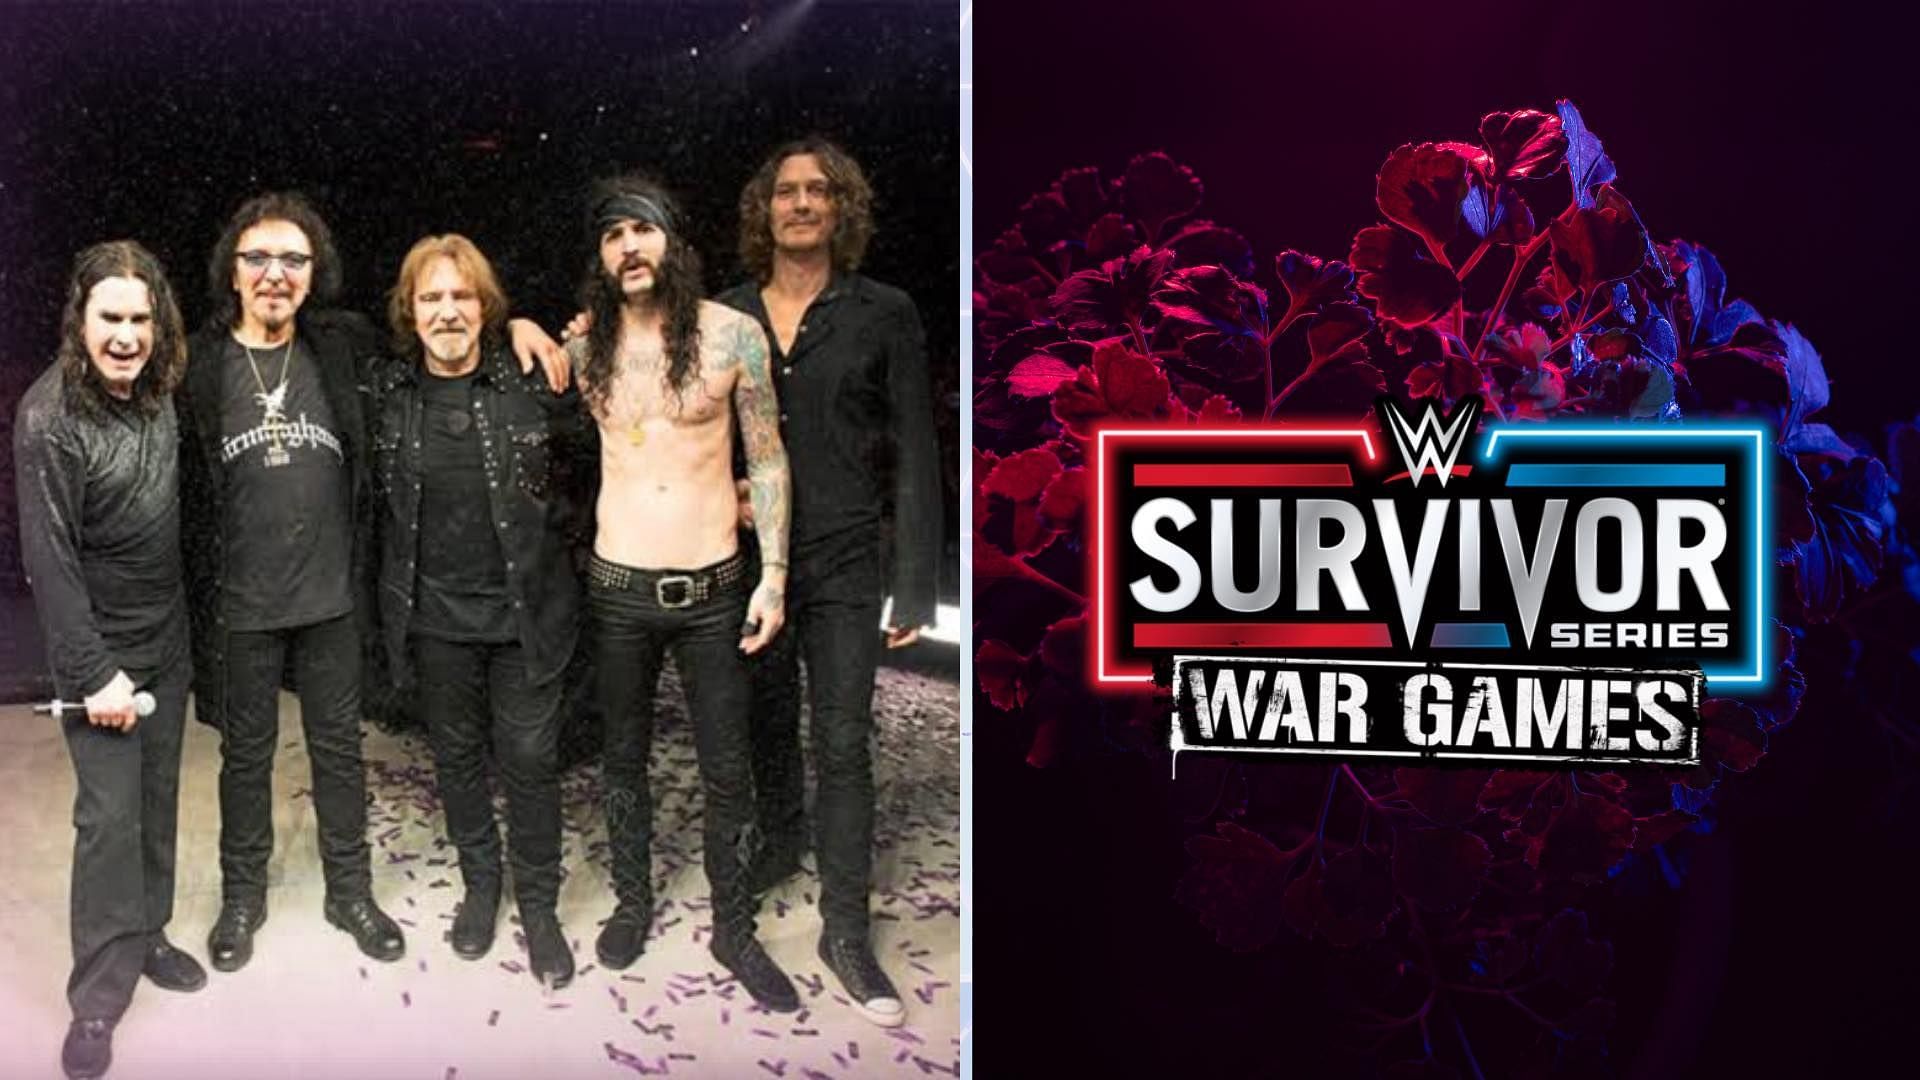 Black Sabbath is the band behind Survivor Series